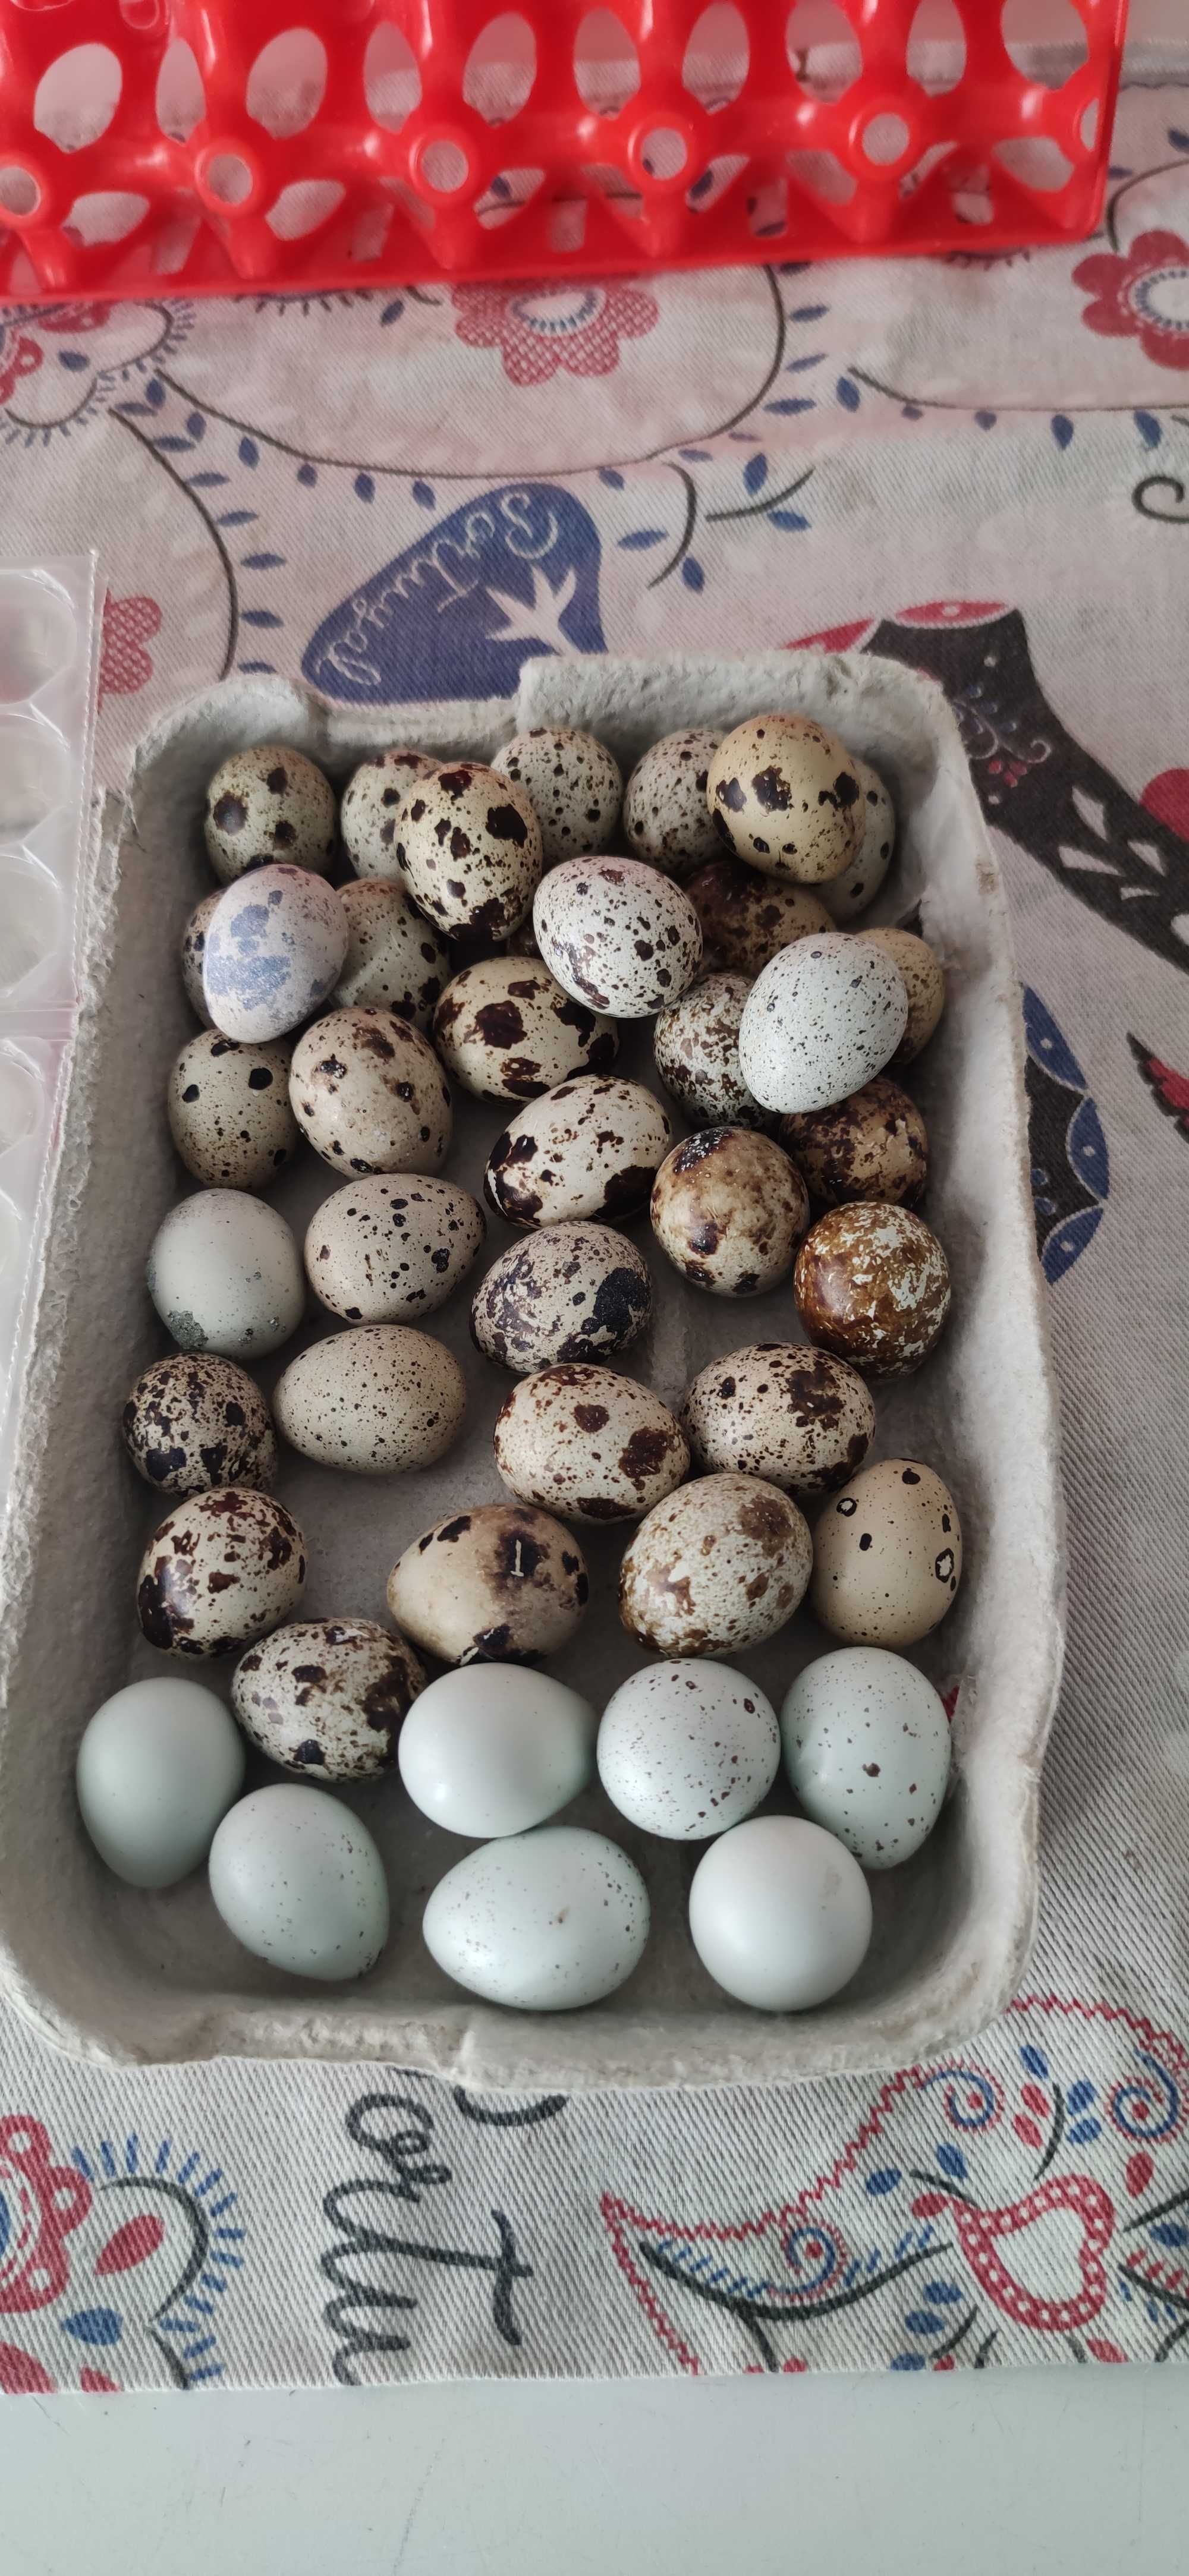 Ovos de codorniz para consumo ou incubação